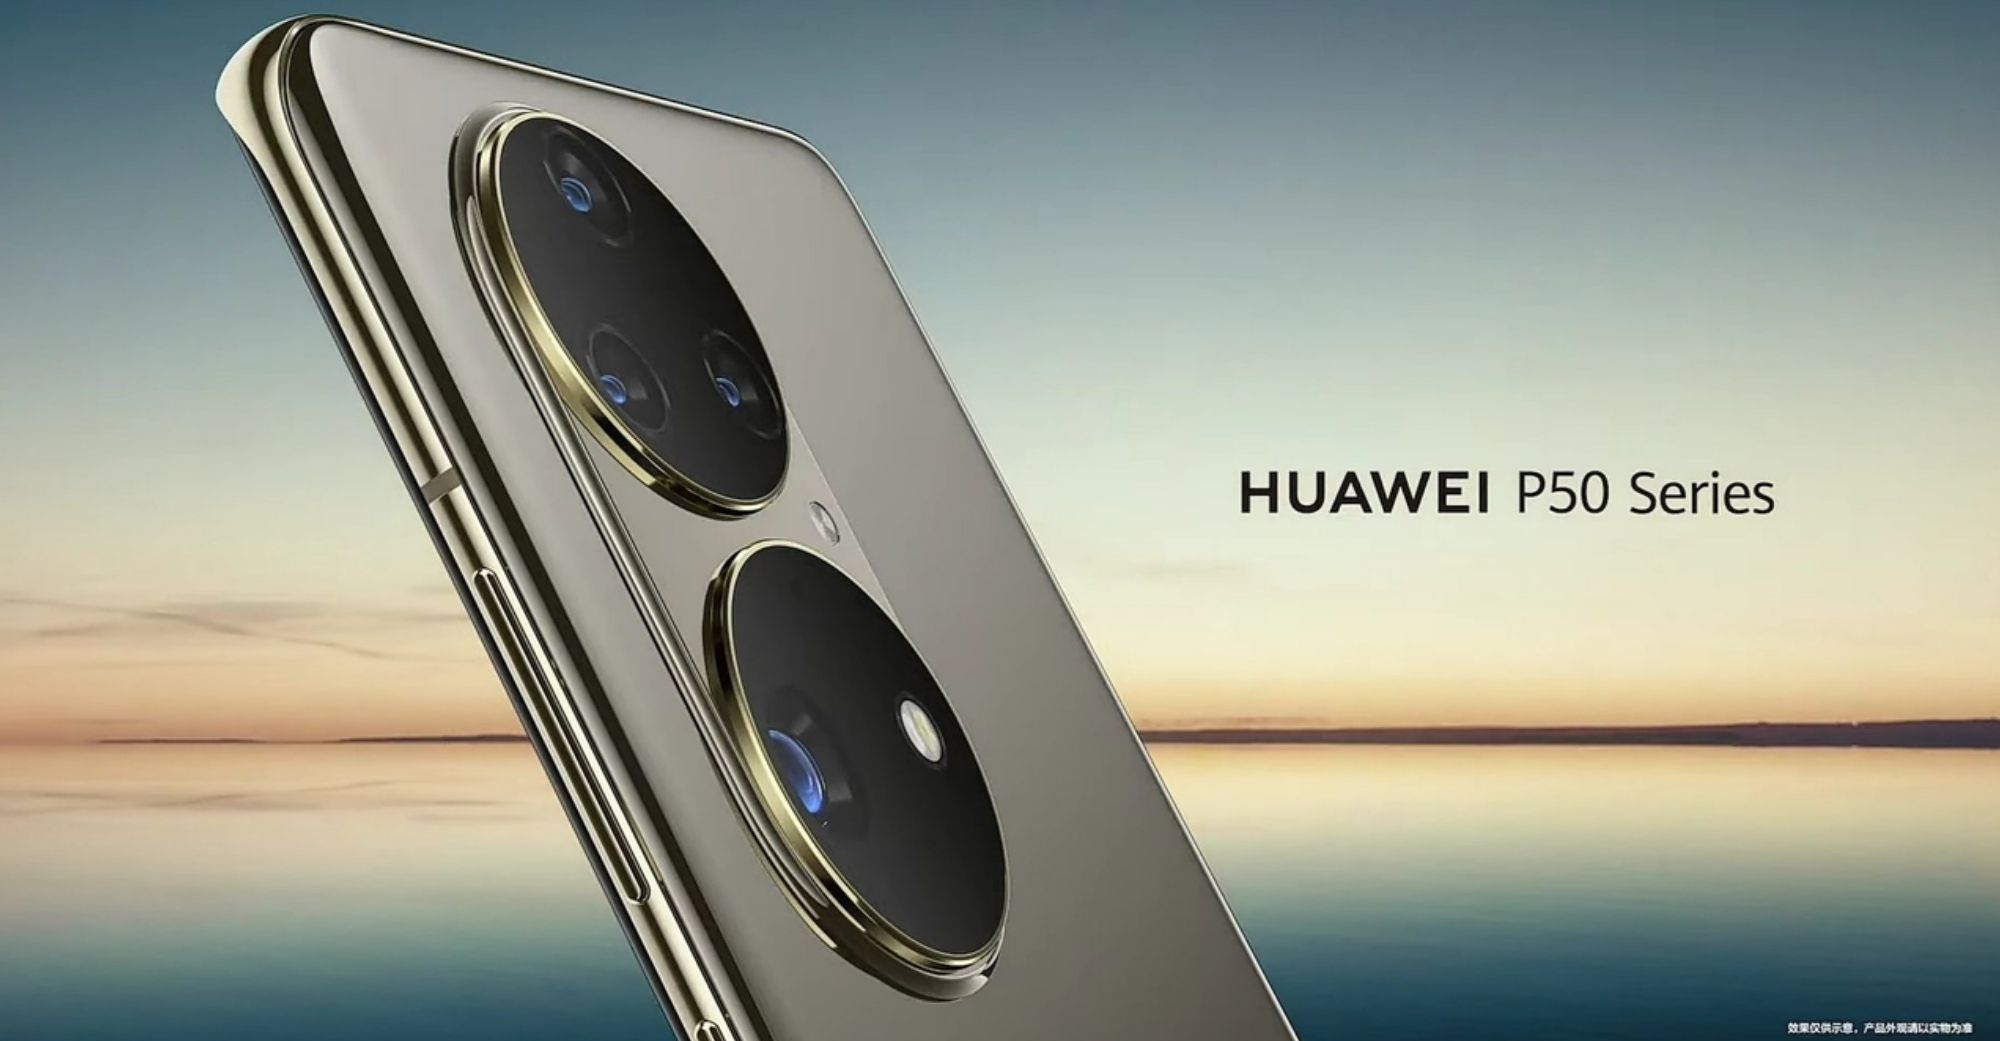 हुआवेई ने आधिकारिक तौर पर आगामी P50 फ्लैगशिप फोन को छेड़ने के लिए घरेलू हार्मनी ओएस लॉन्च किया